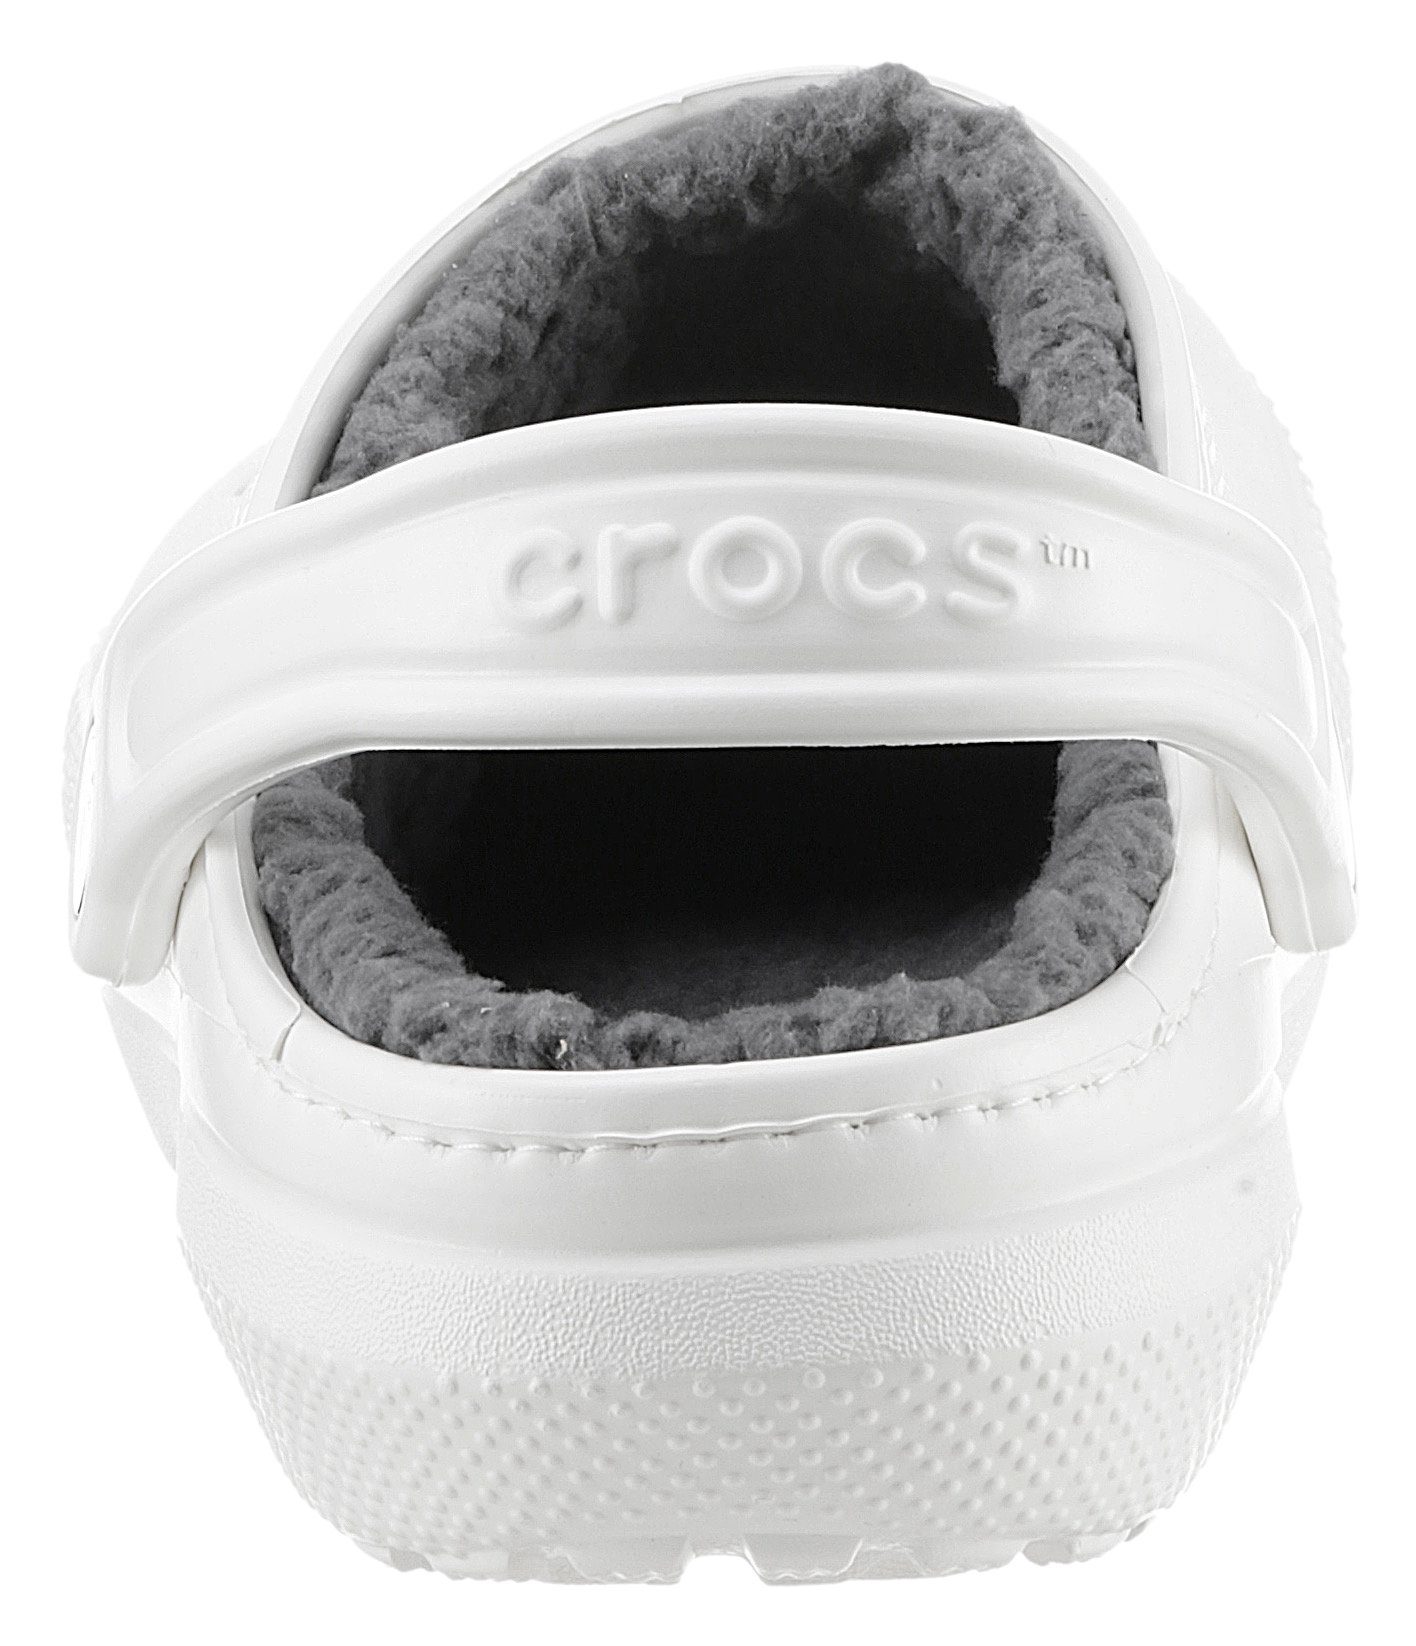 Clog mit kuscheligem Lined Classic weiß-grau Crocs Fellimitat Hausschuh